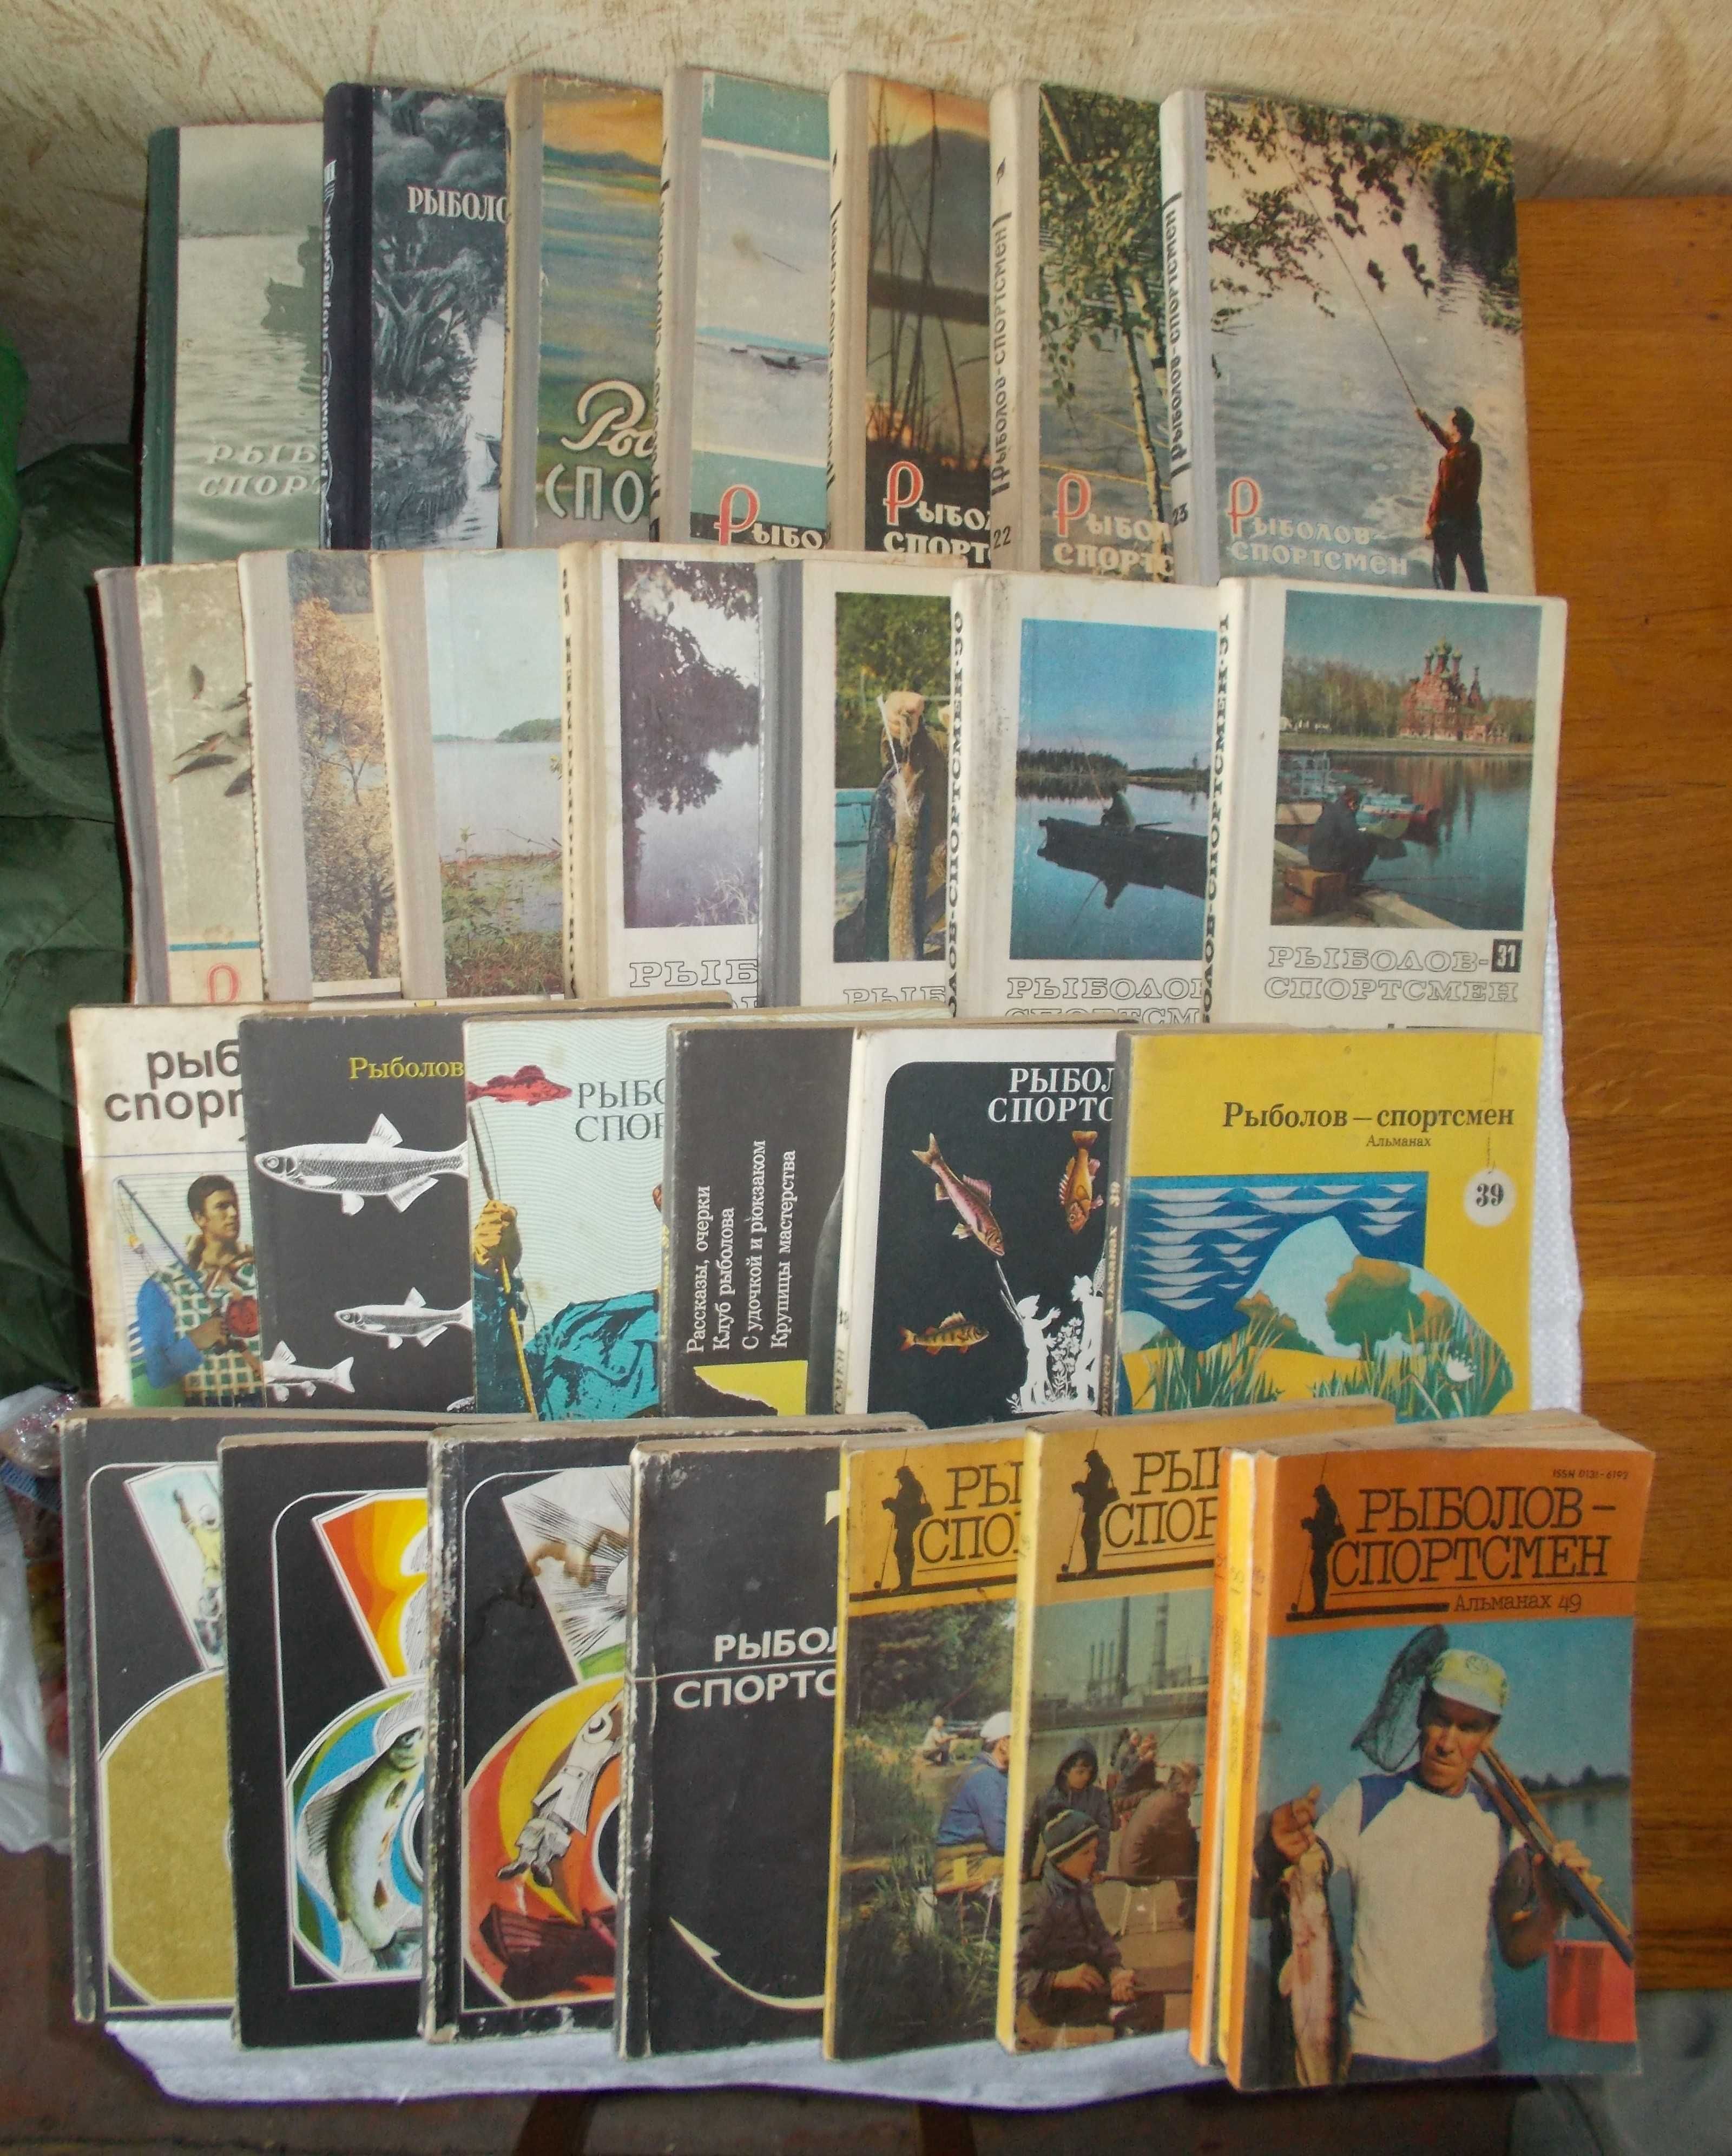 Подборка книг "Рыболов-спортсмен" и журналов "Катера и яхты", вместе